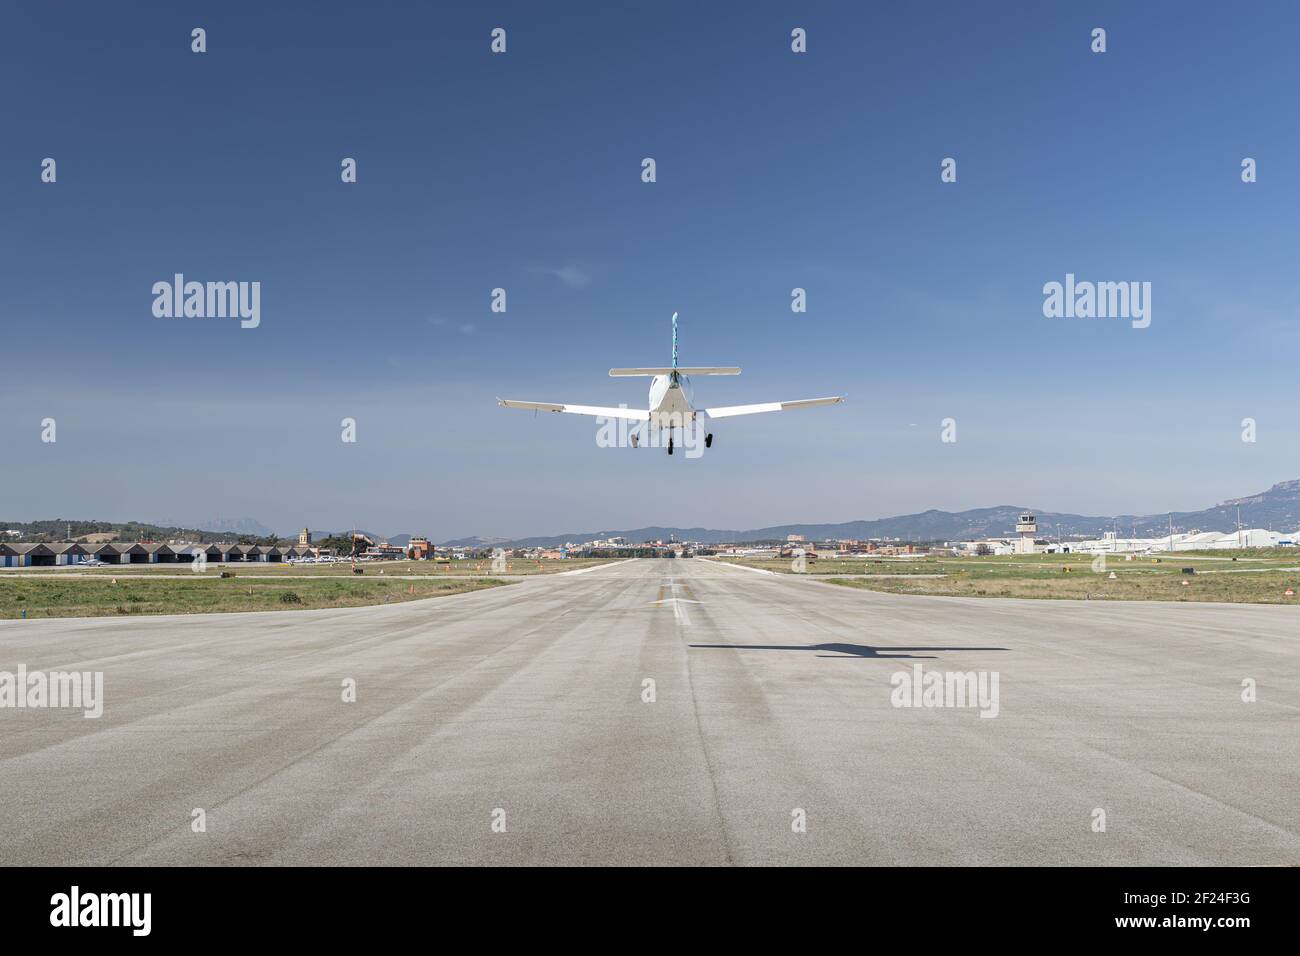 Aviones de hélice ligera aterrizando en la pista, de cerca vista simétrica Foto de stock